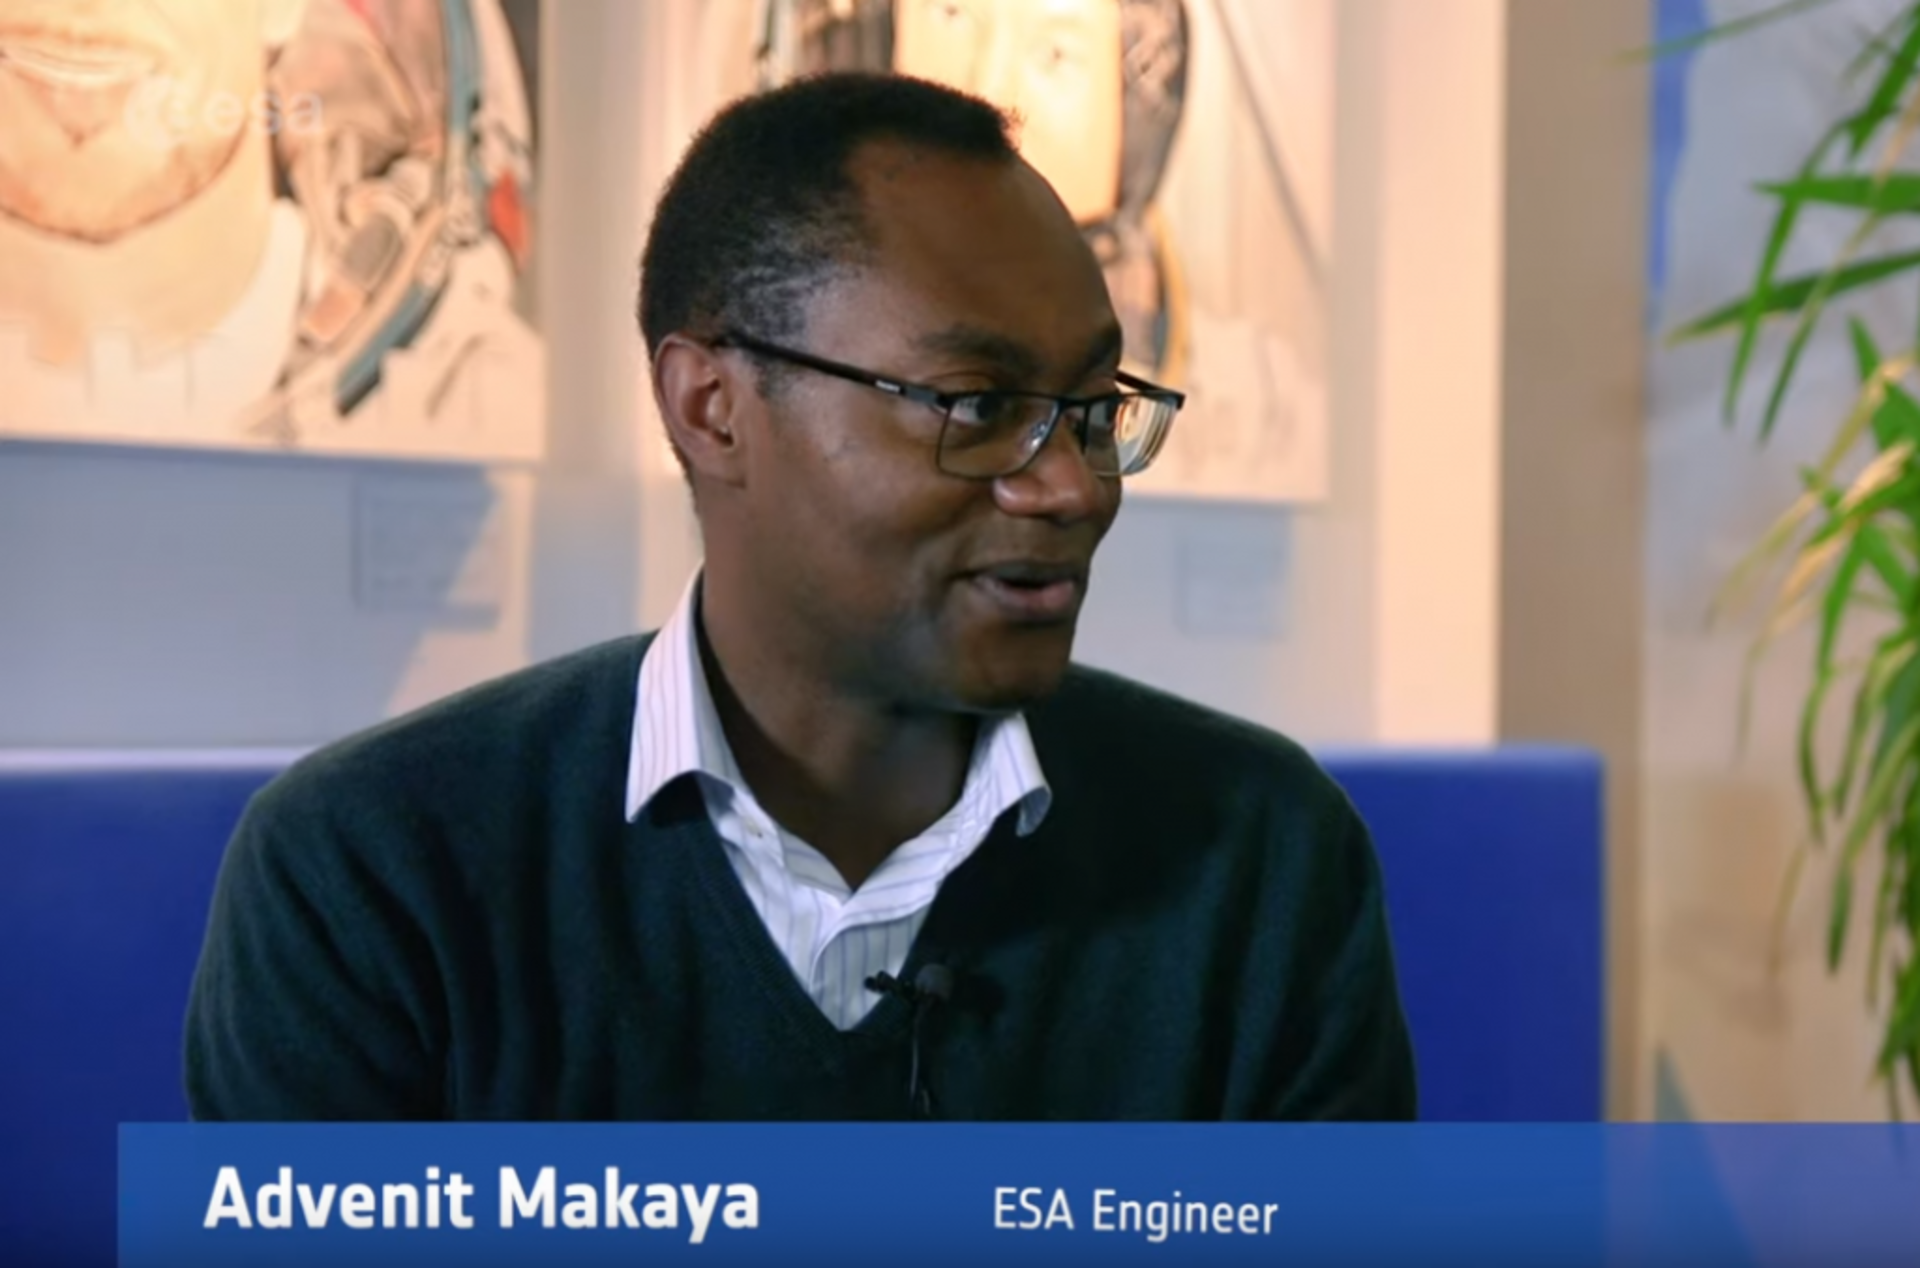 ESA Moon expert Advenit Makaya